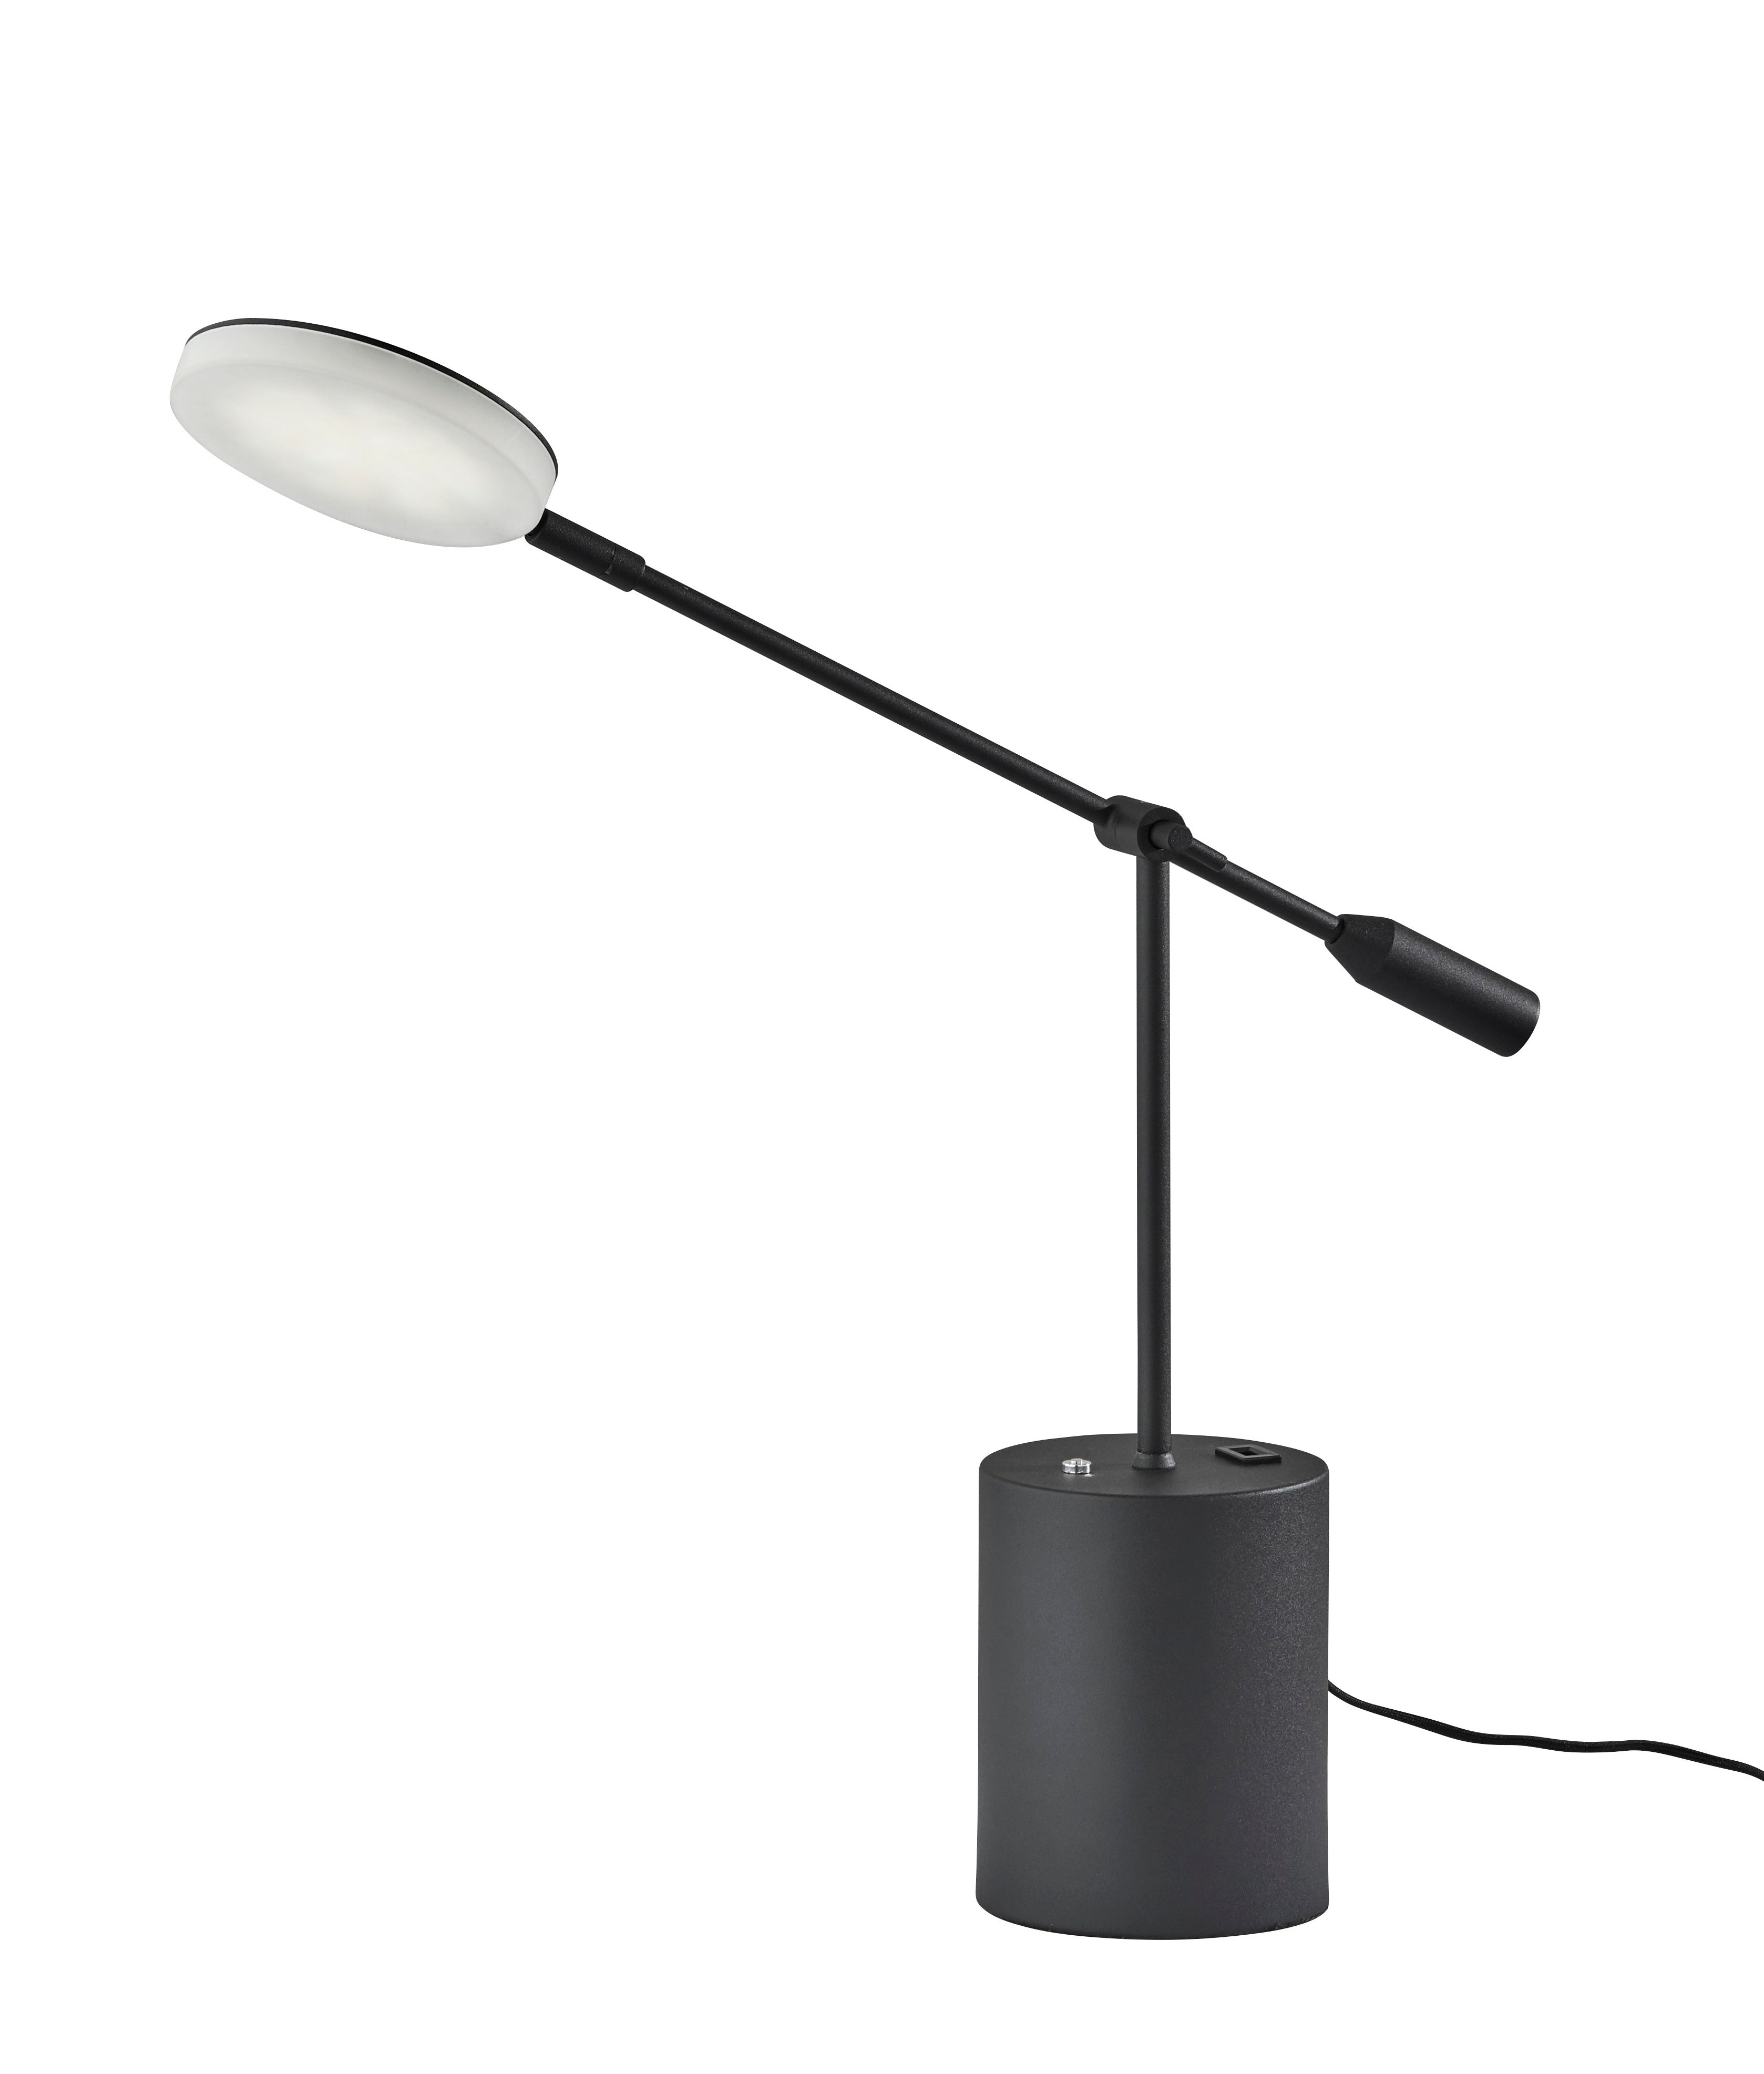 GROVER Lampe sur table Noir DEL INTÉGRÉ - 2150-01 | ADESSO